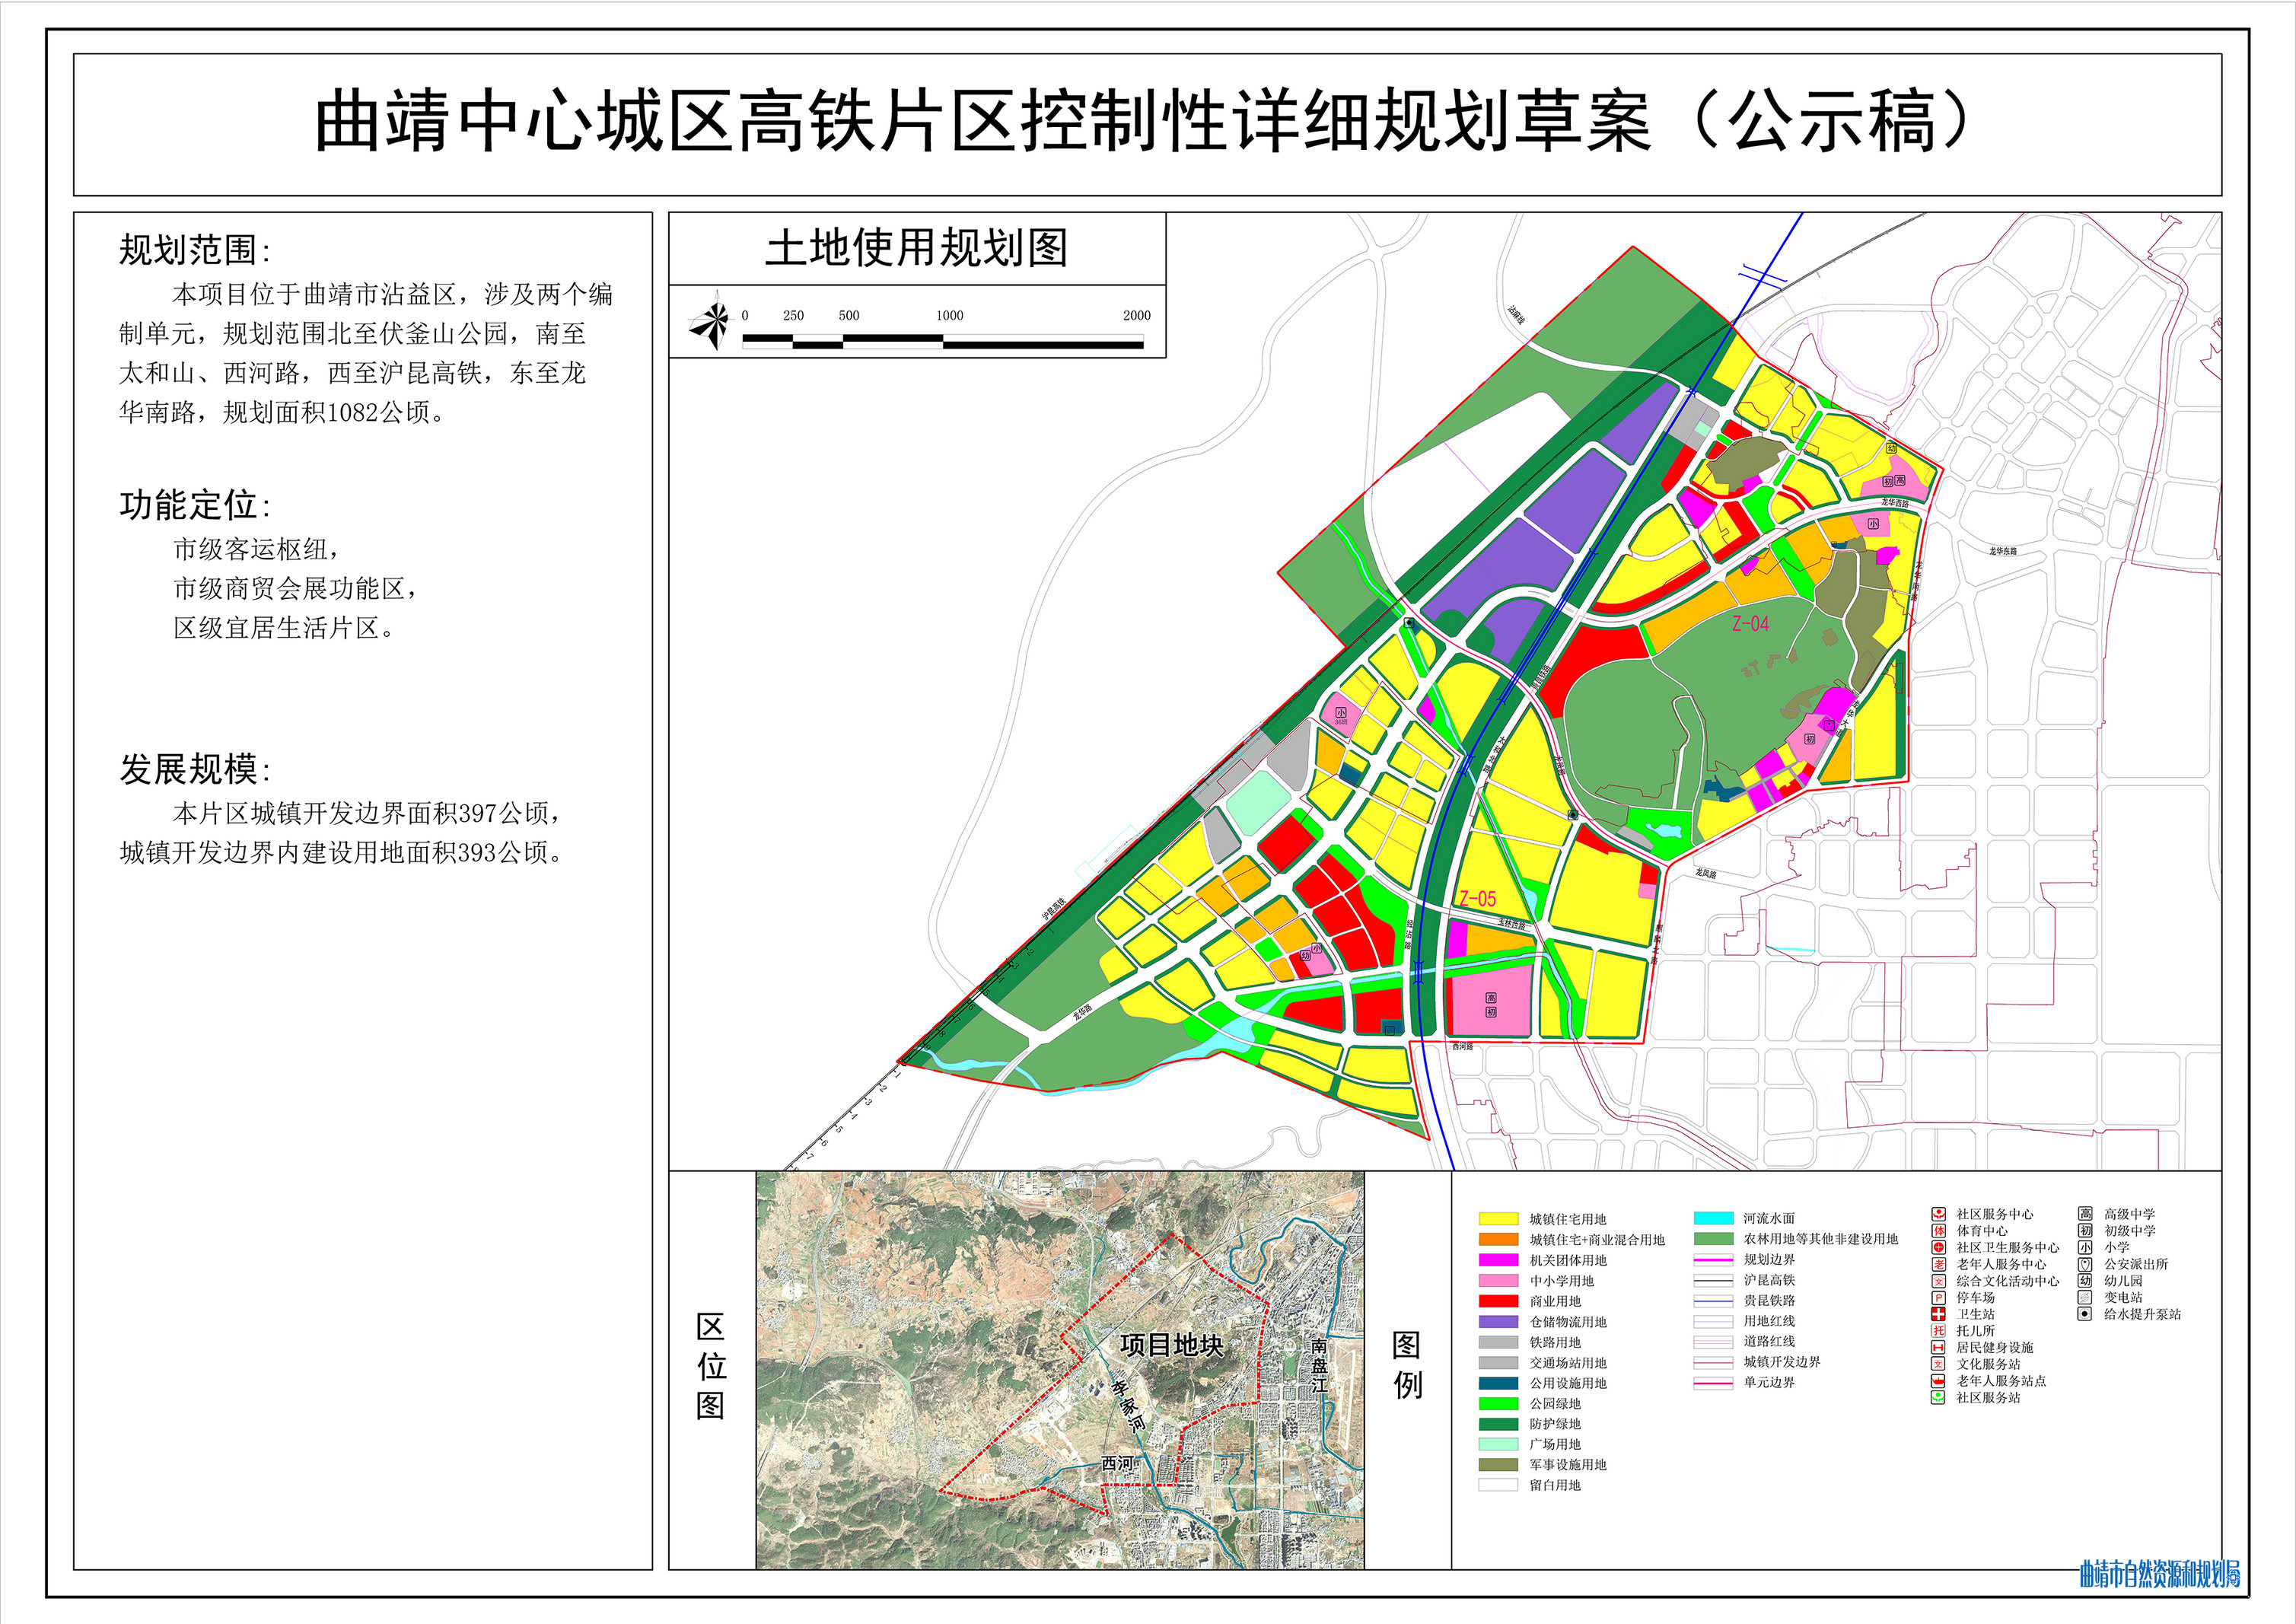 曲靖中心城区高铁片区控制性详细规划草案公示